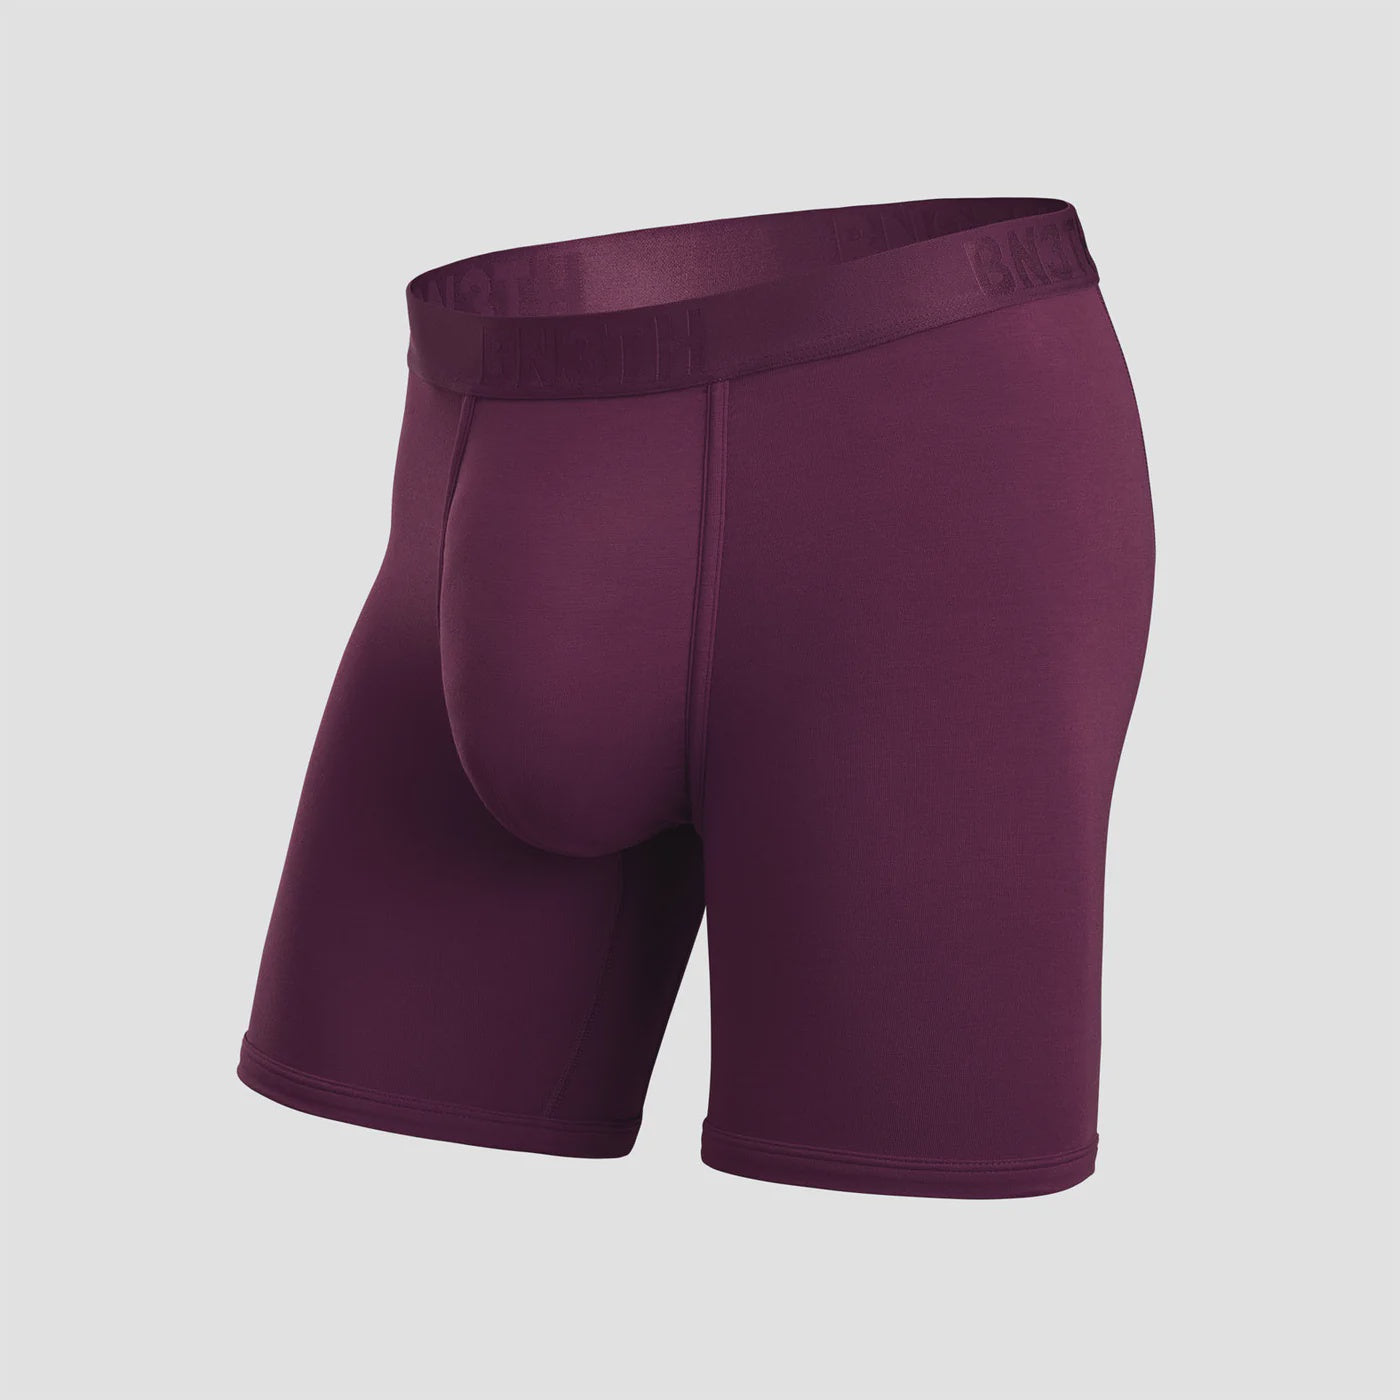  BN3TH Men's Classics Trunk Brief Premium Underwear